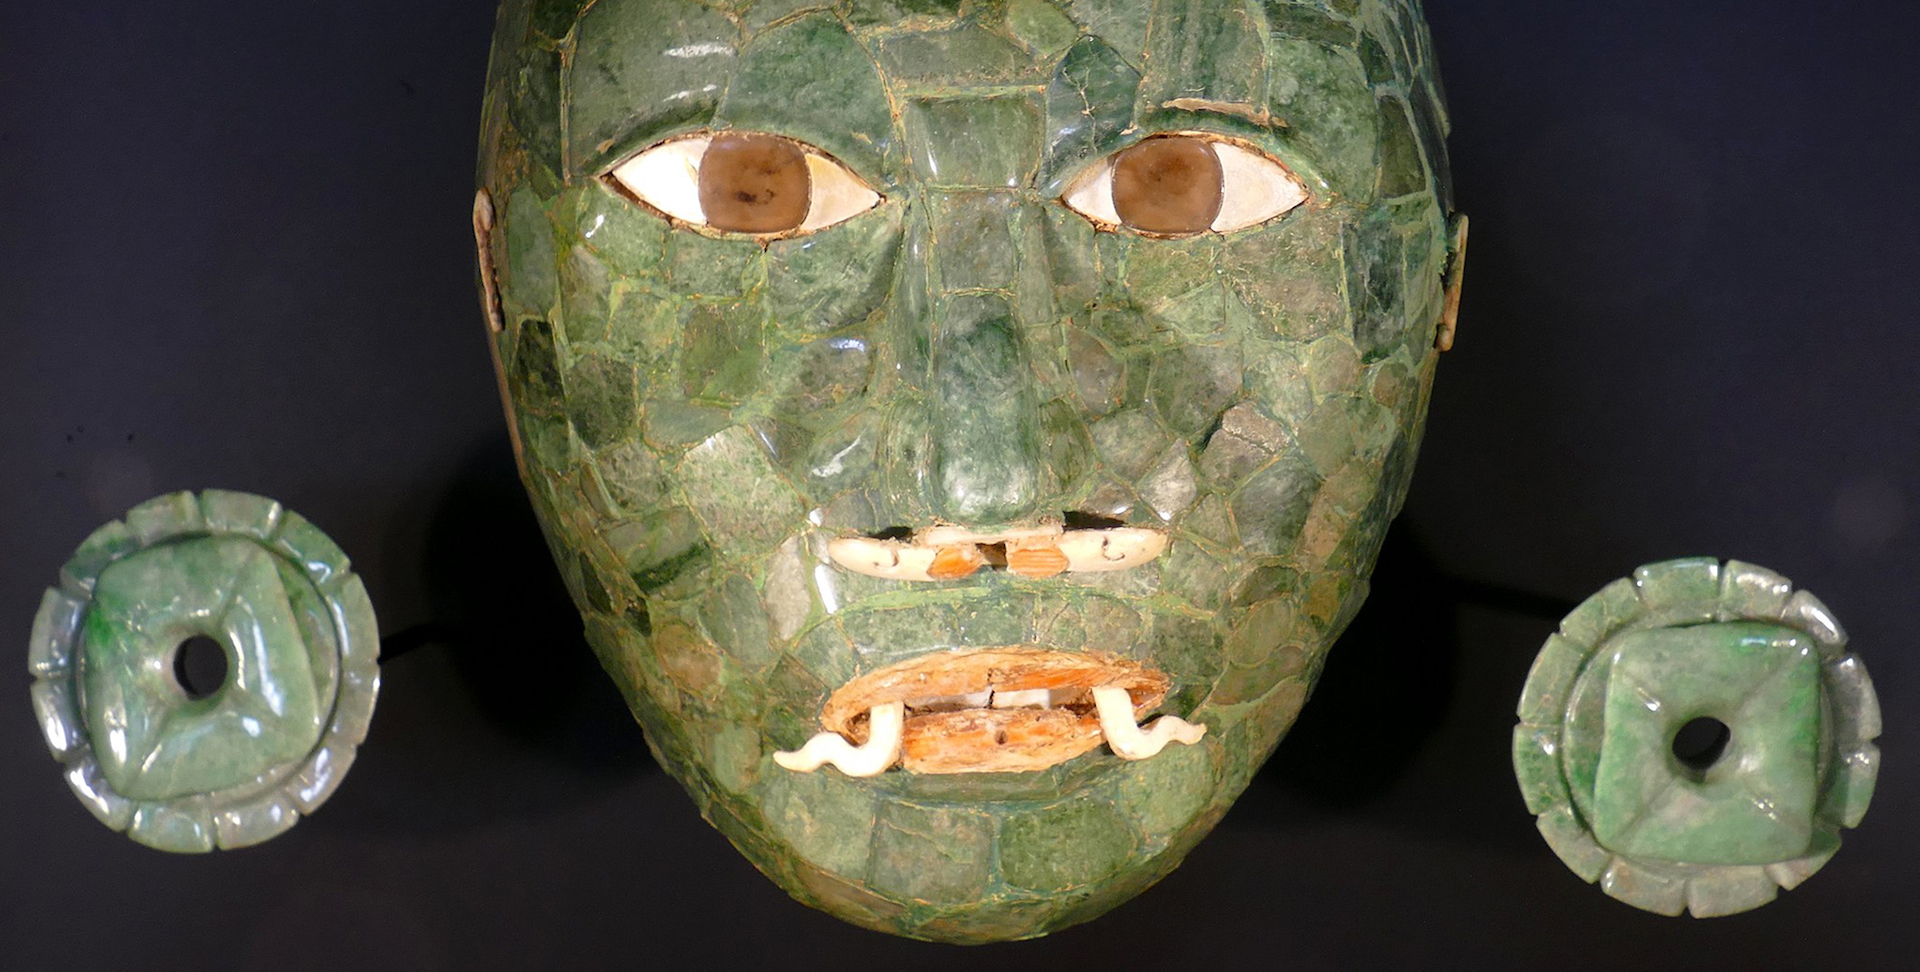 Mesoamerican Cultures